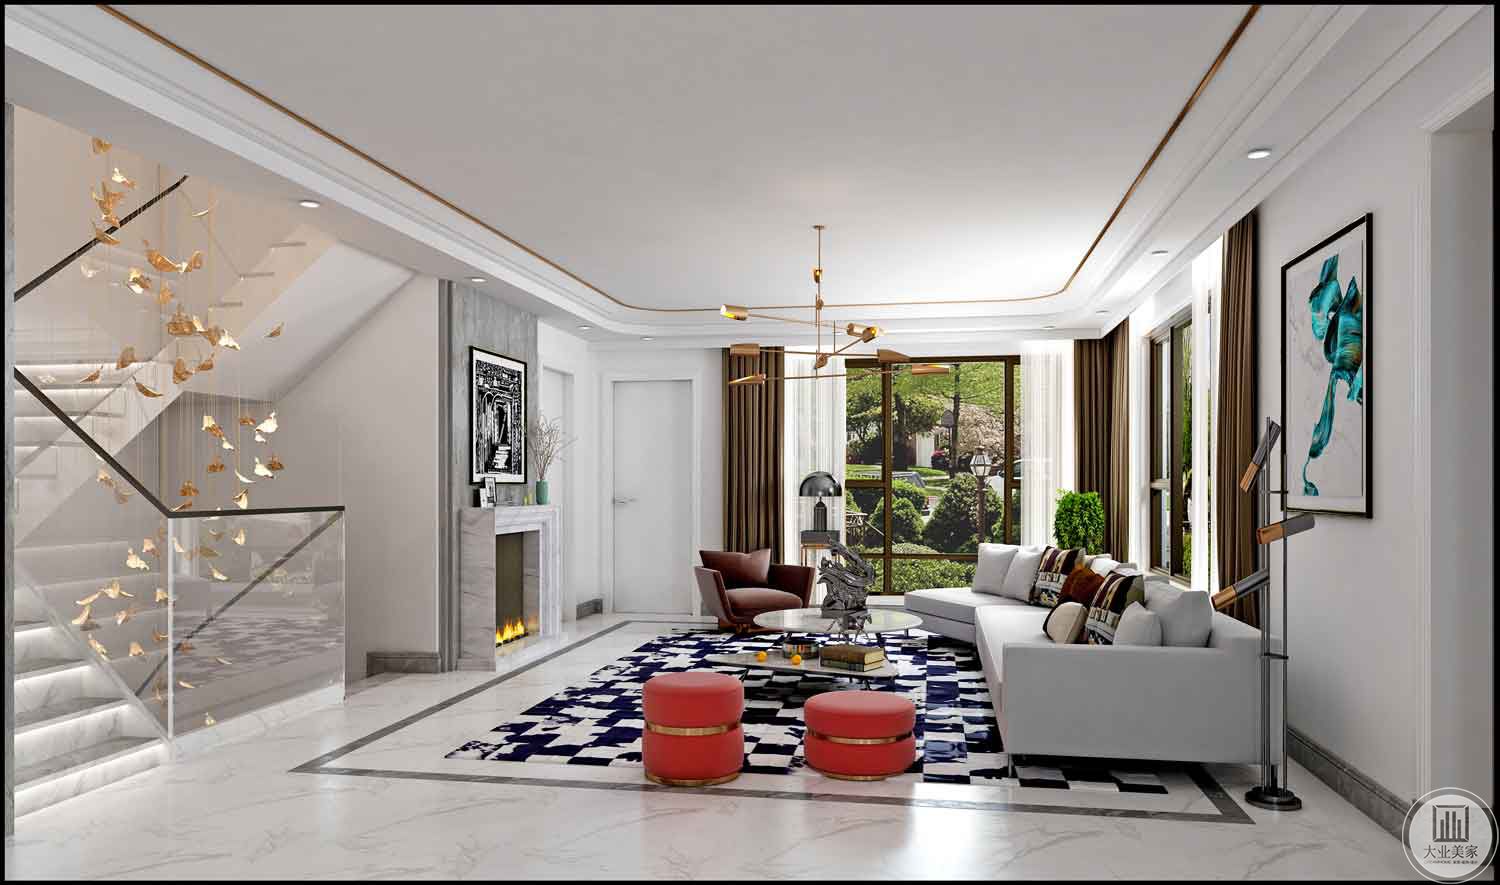 客厅风格以简约为主，家居中强调的是自然色彩的沉静和造型线条的简洁，和室的门窗大多简洁透光，家具低矮且不多，给人以宽敞。